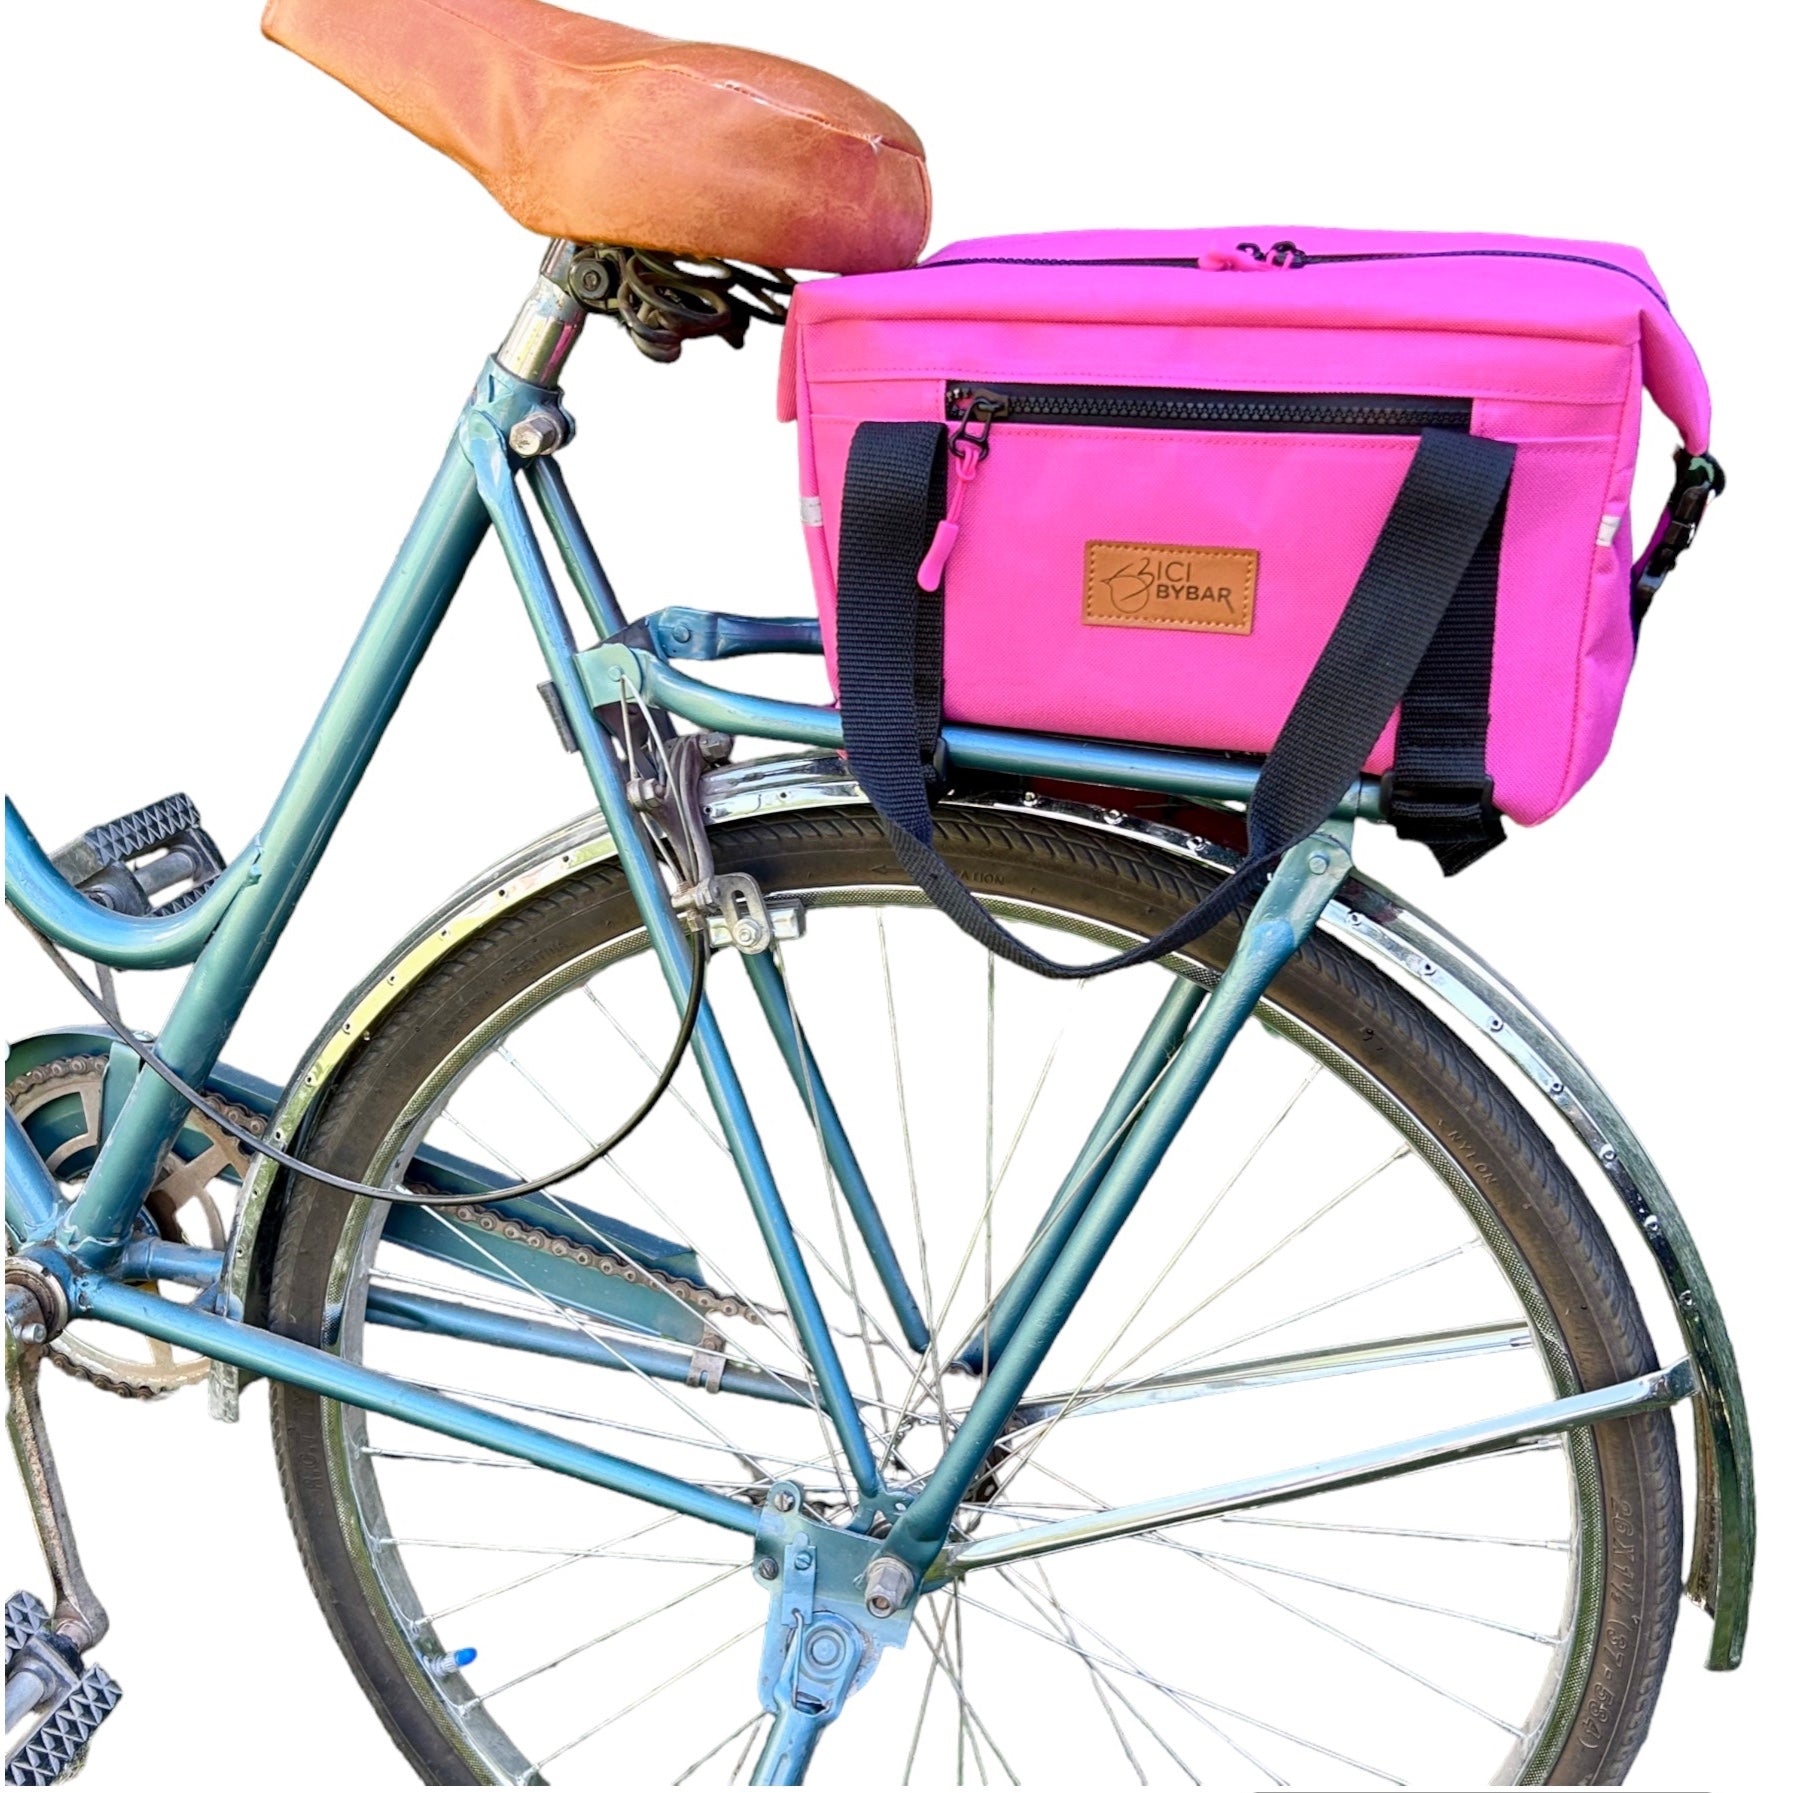 MAGUI - Pink Bicycle Trunk bag Waterproof